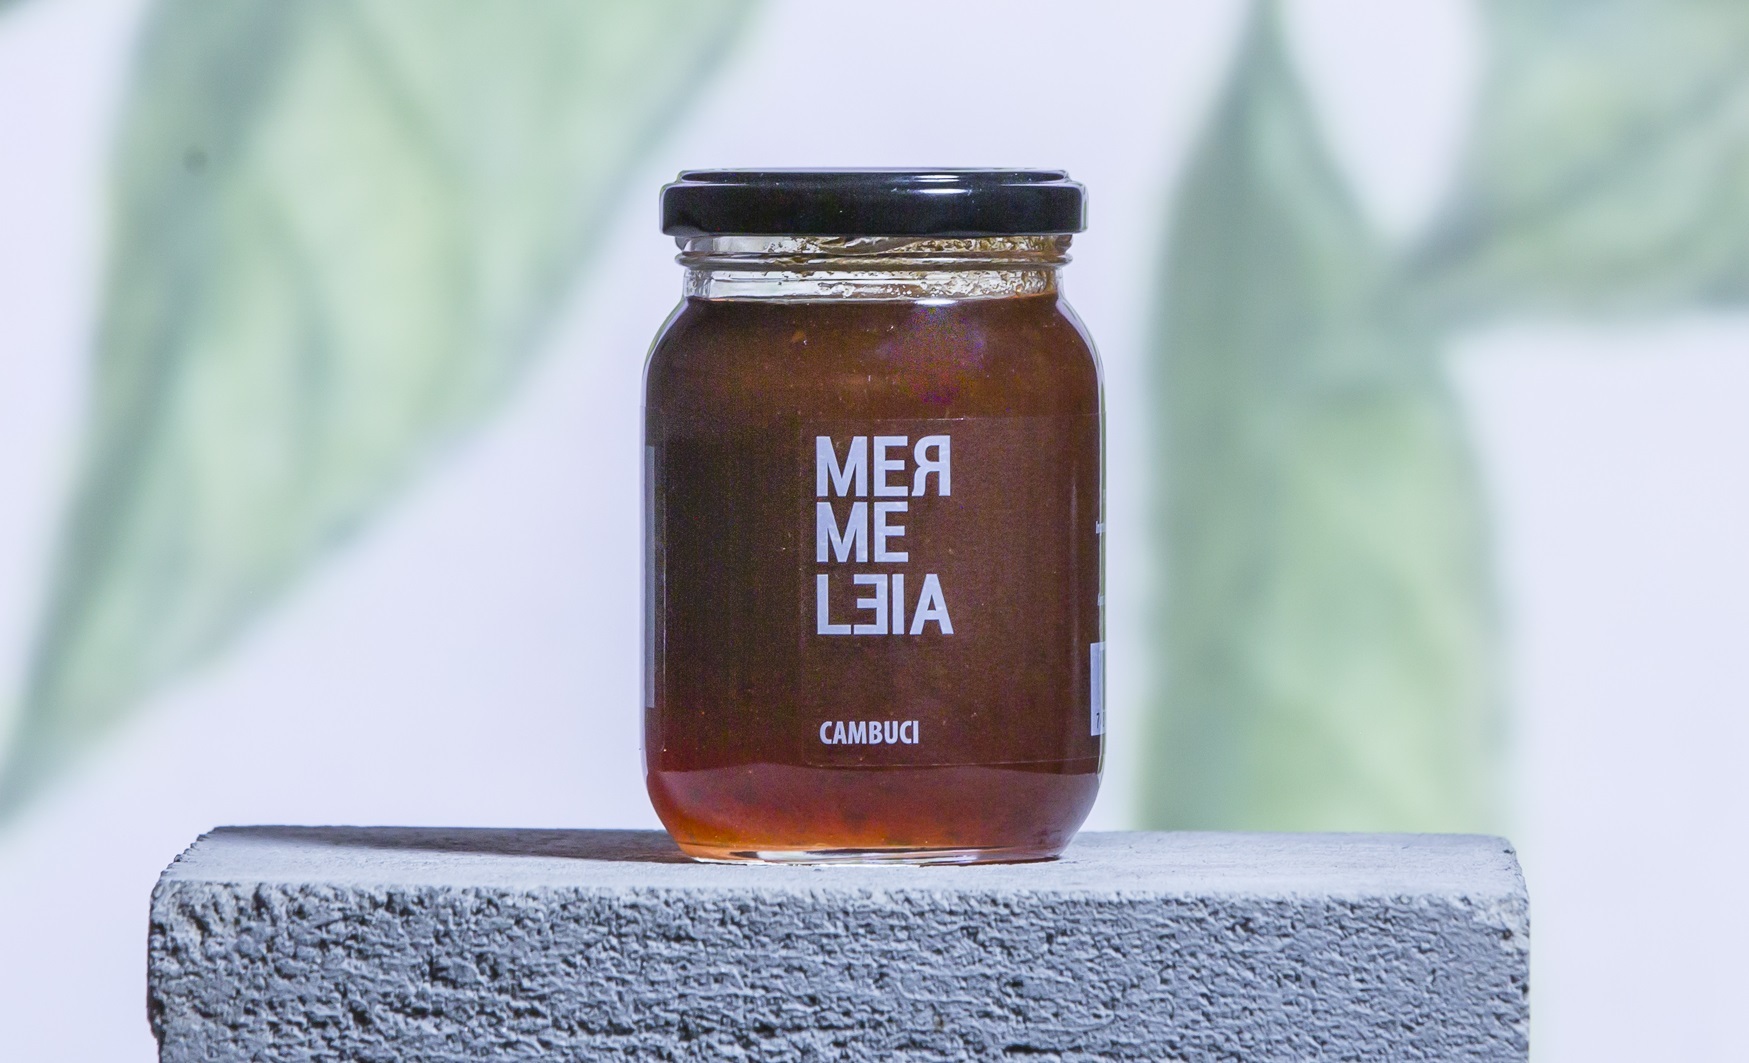 O sabor único da geleia de cambuci rendeu uma menção honrosa à Mermeleia no The World ‘s Original Marmalade Awards & Festival, uma competição sediada no Reino Unido